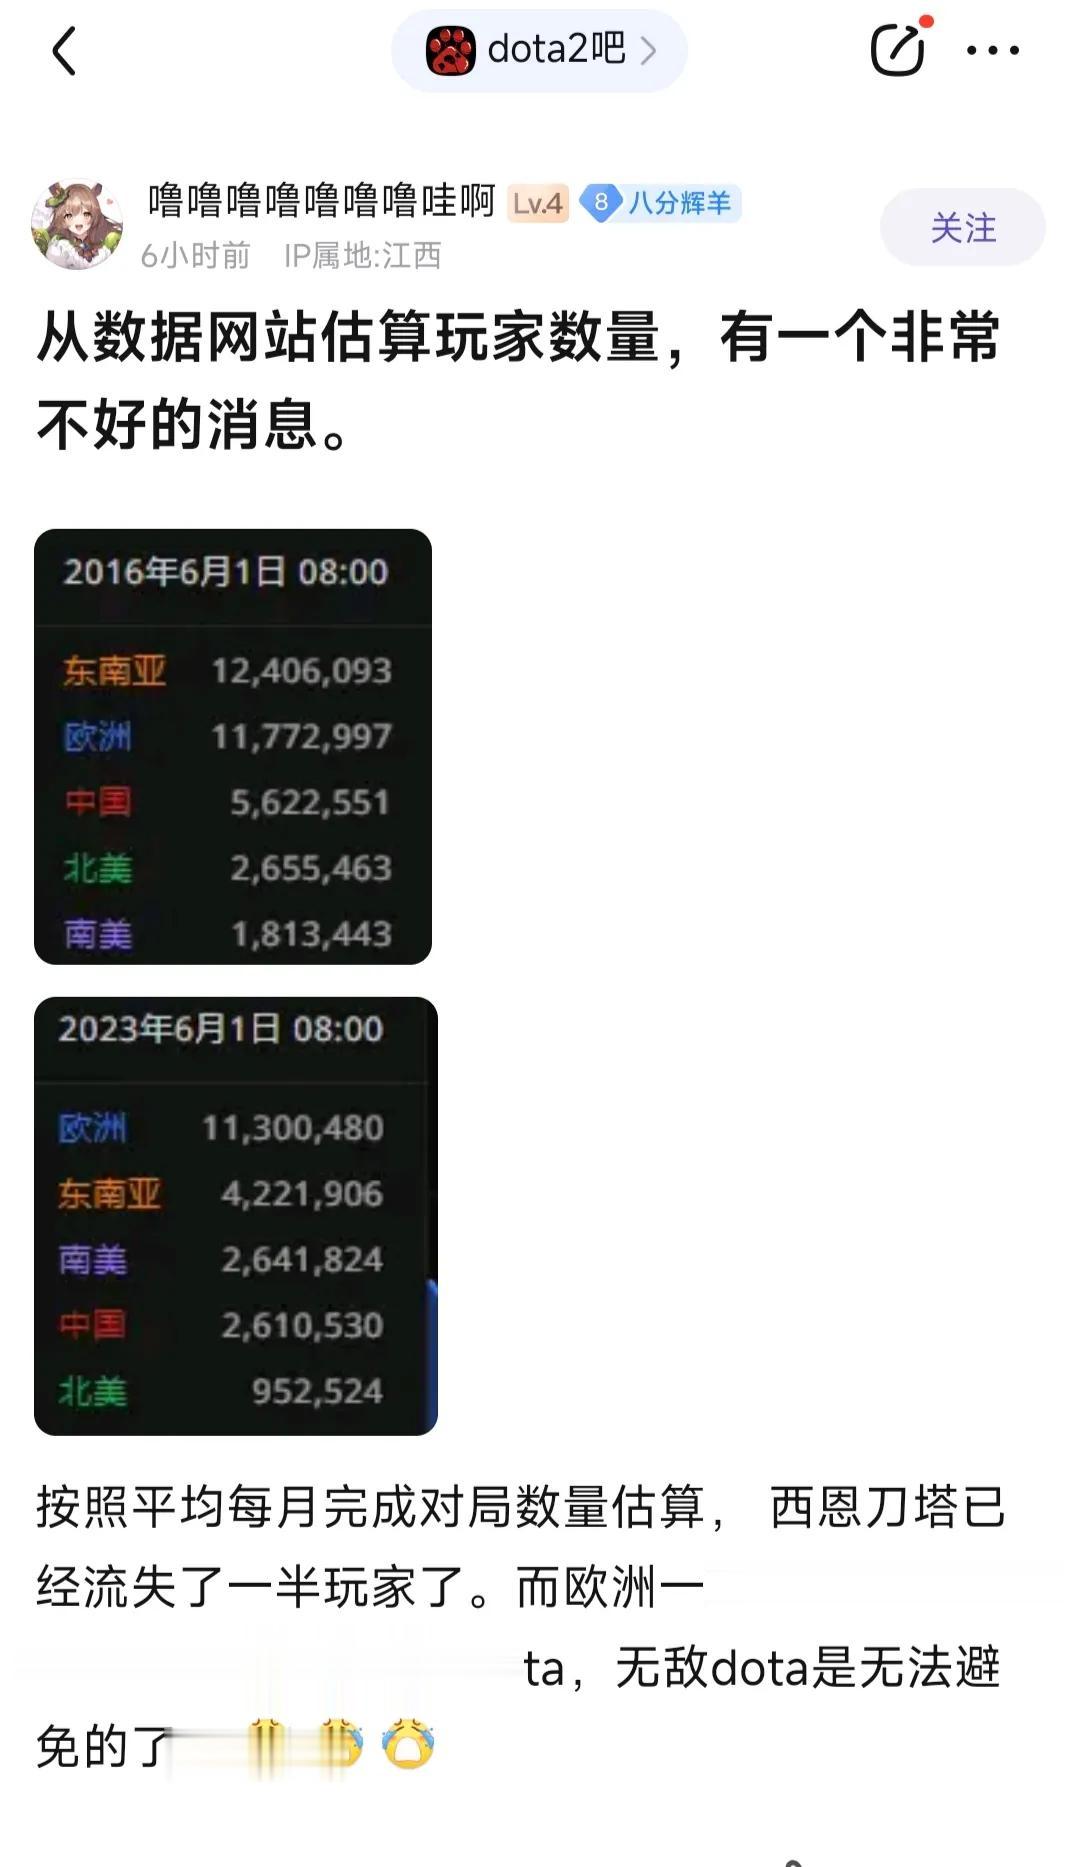 中国打刀塔的玩家越来越少，有人发出专业网站的统计数据，这就是原因。

2016年